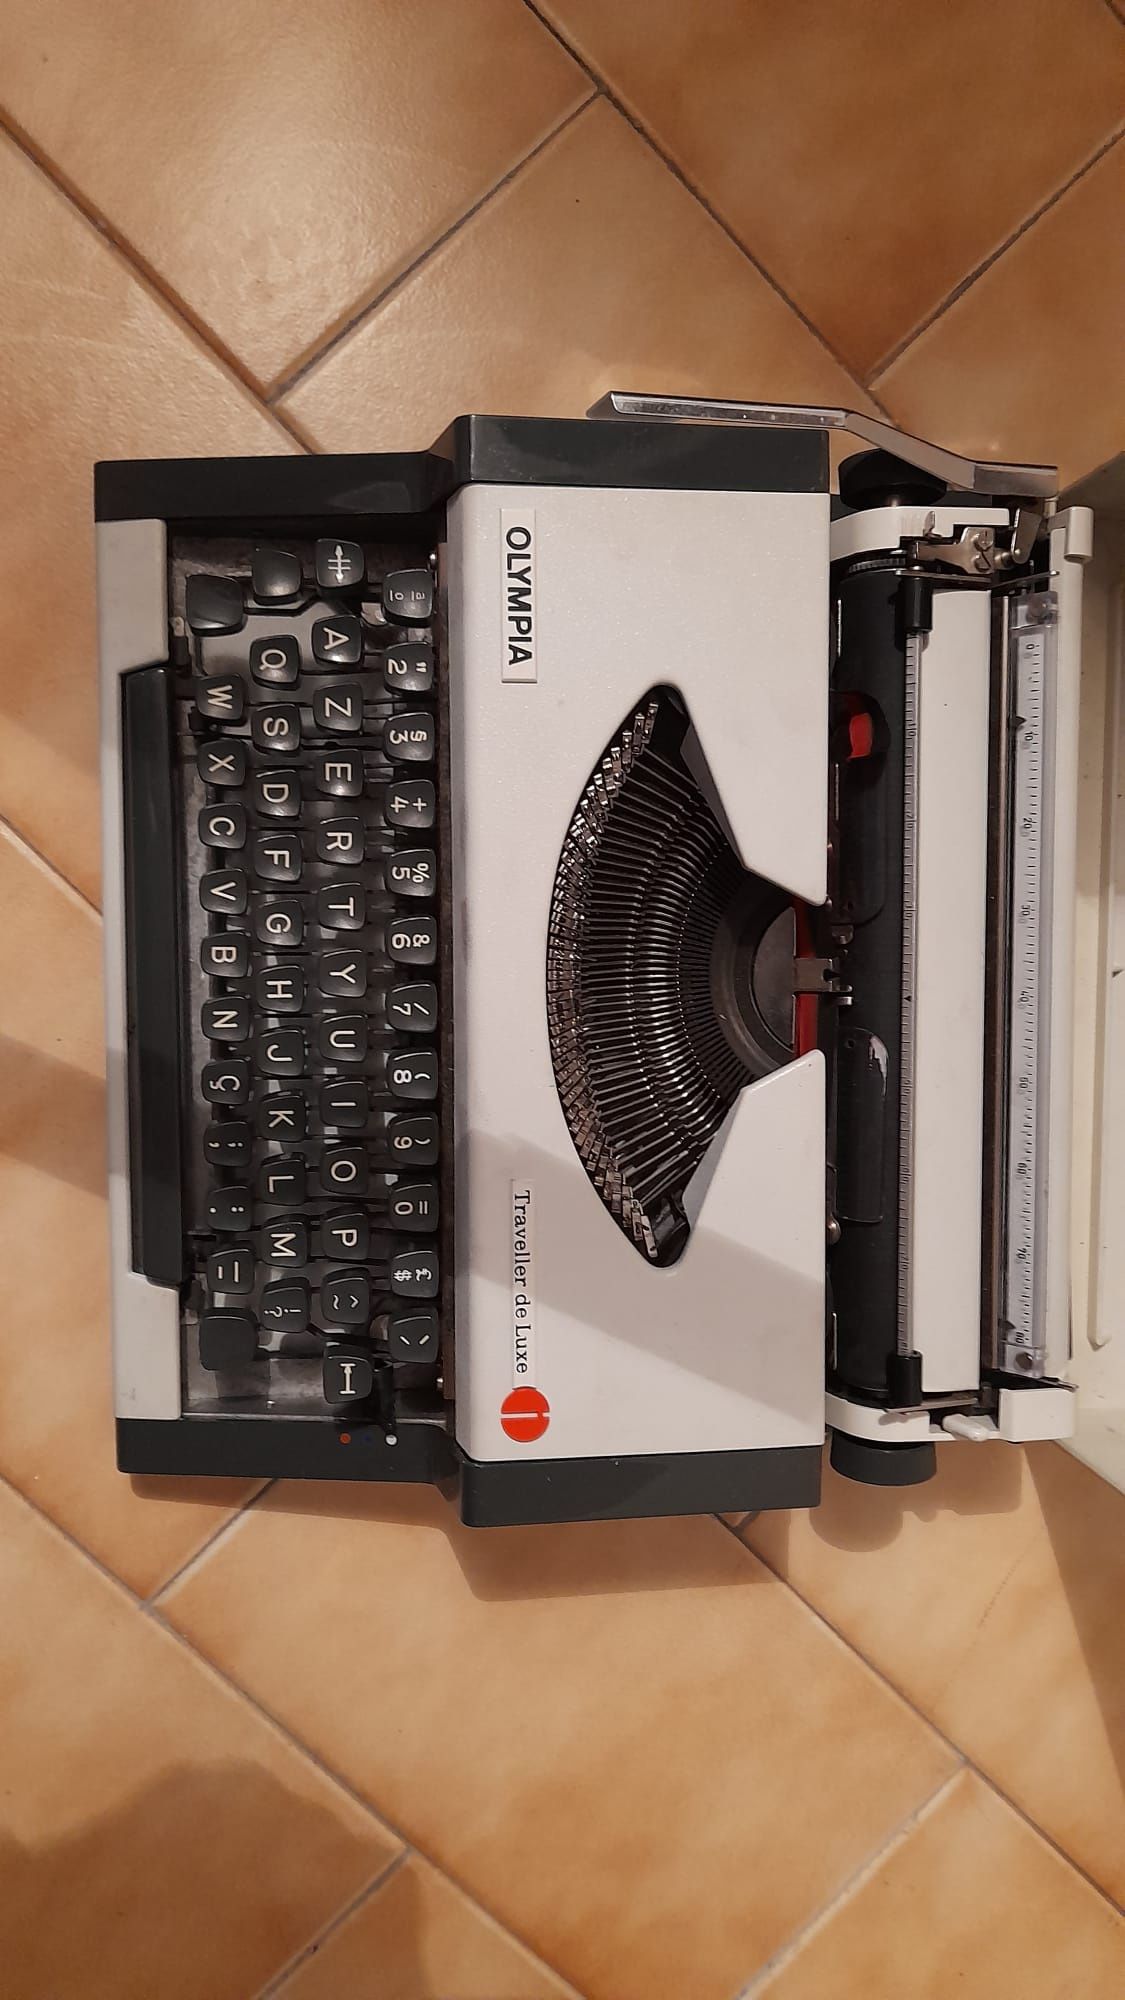 Maquina escrever antiga